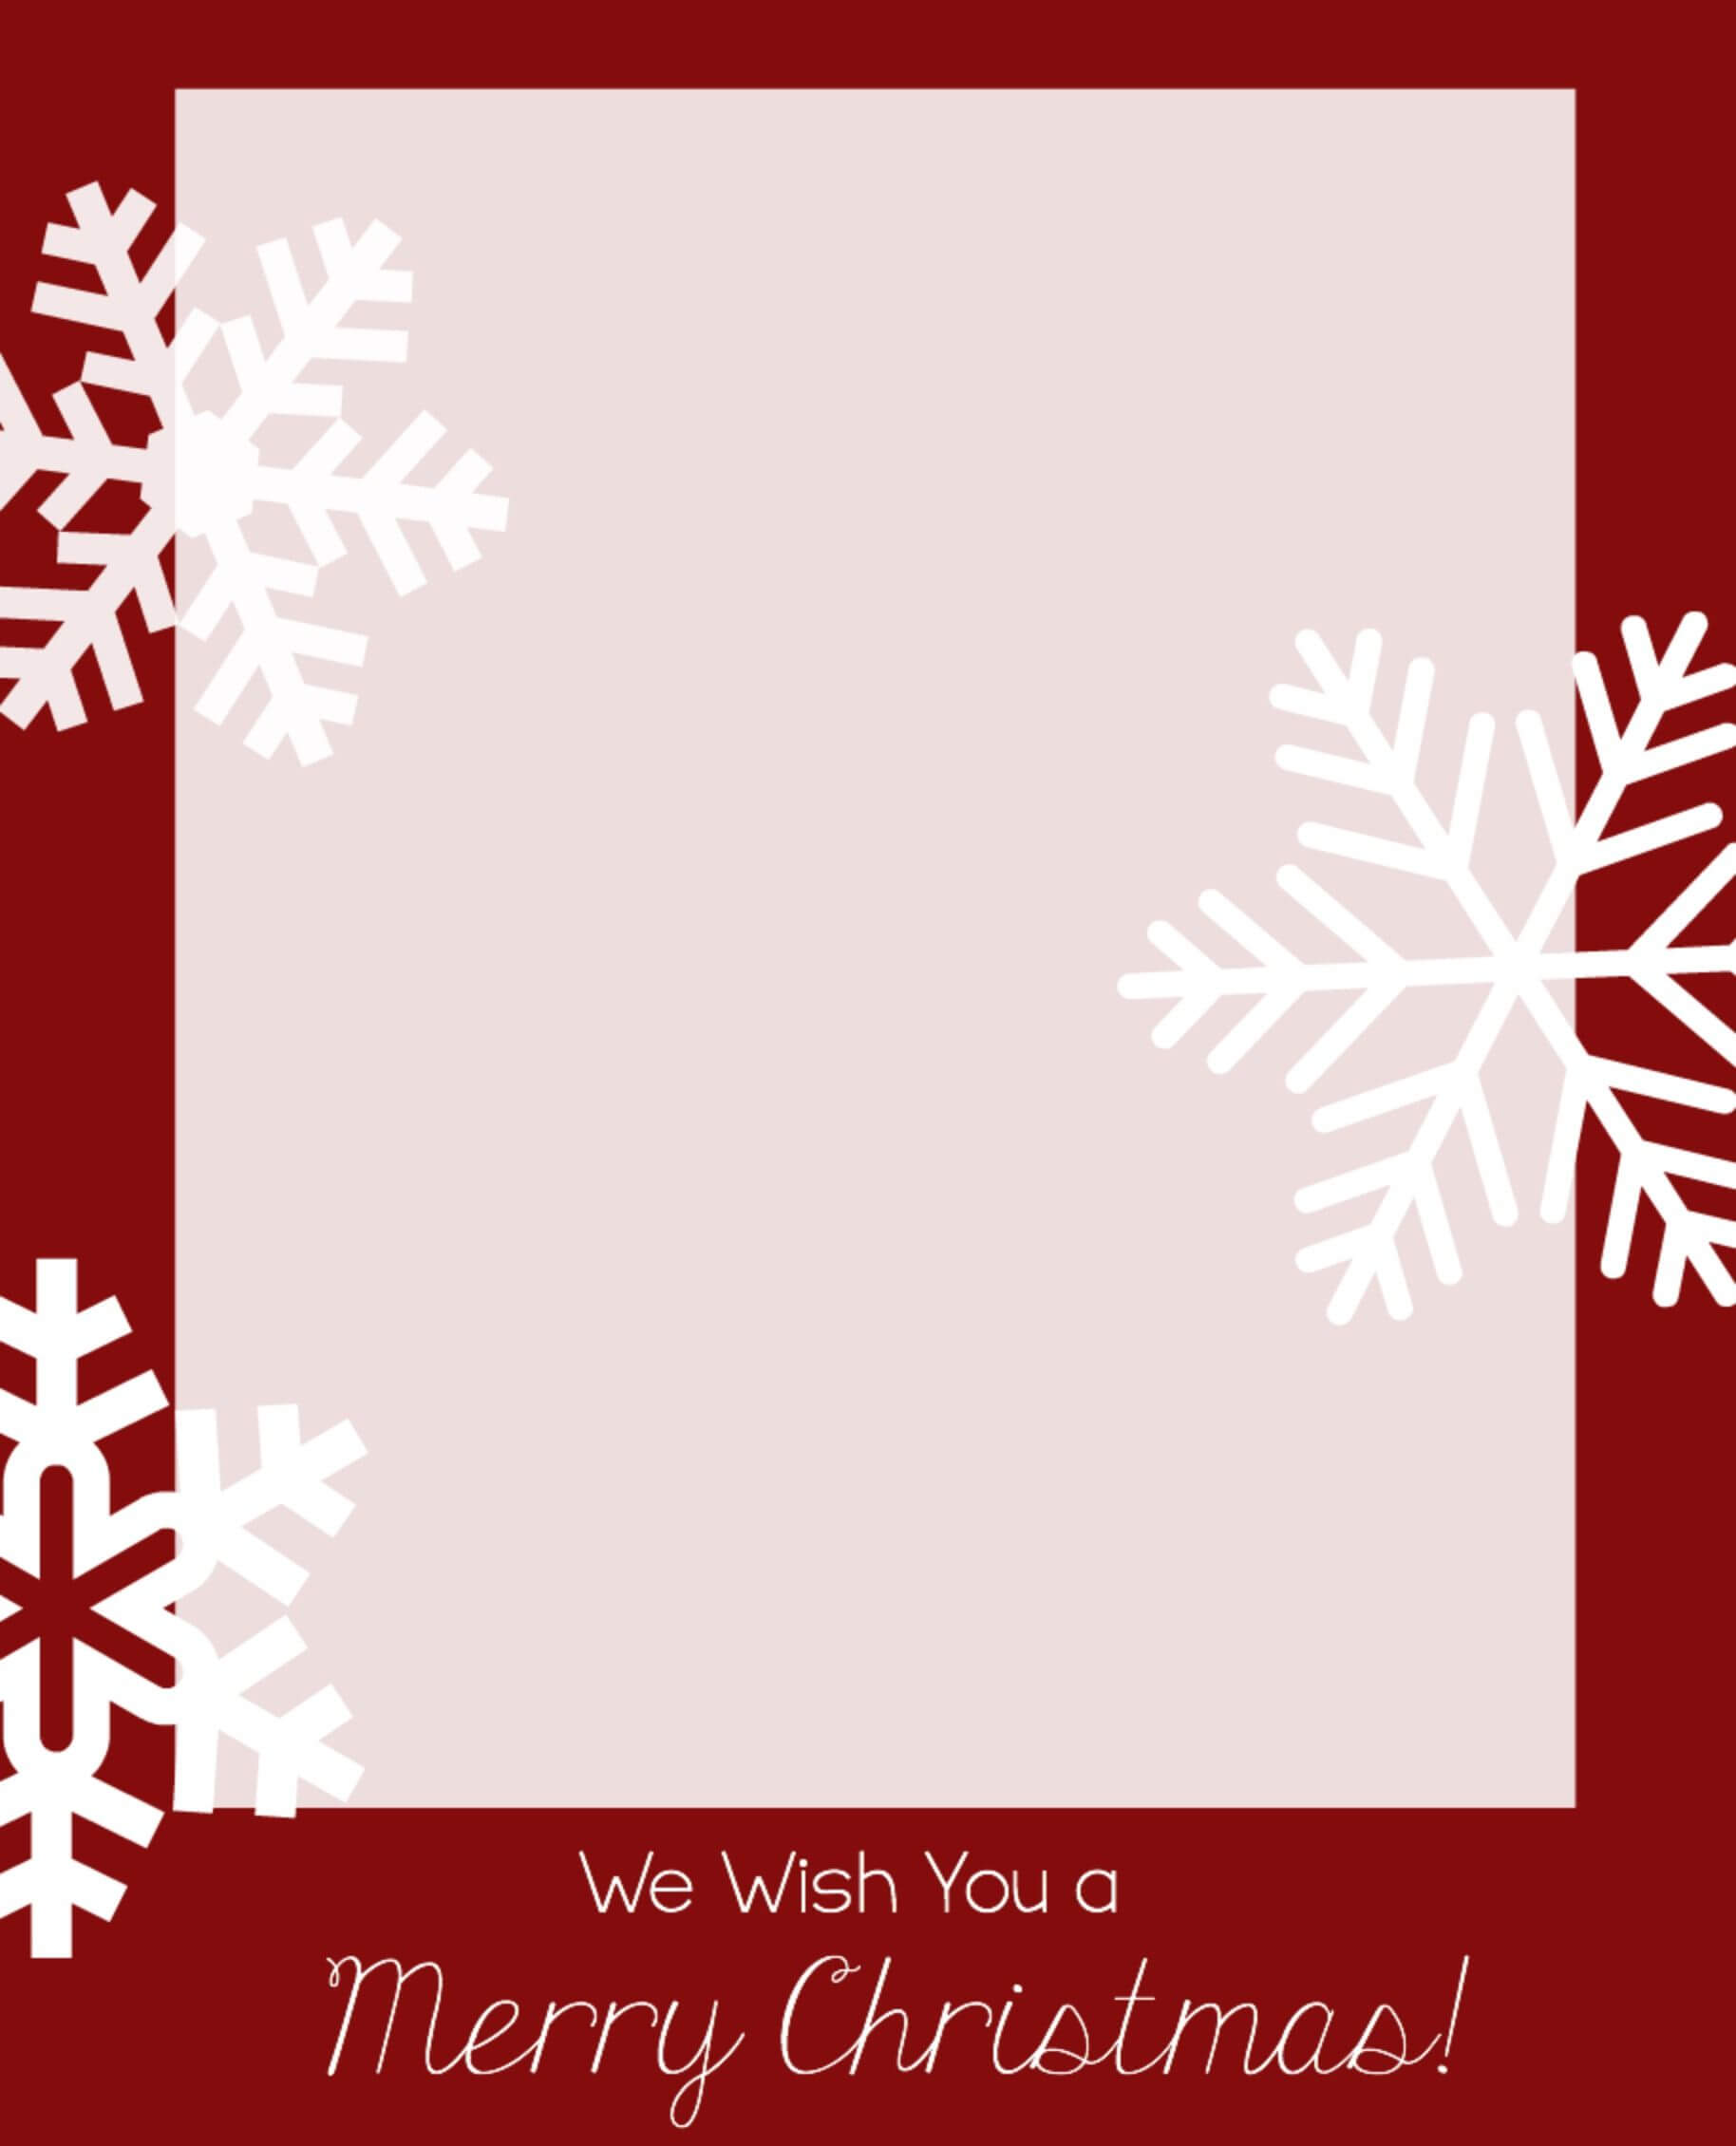 Free Christmas Card Templates | Christmas Photo Card Within Free Holiday Photo Card Templates